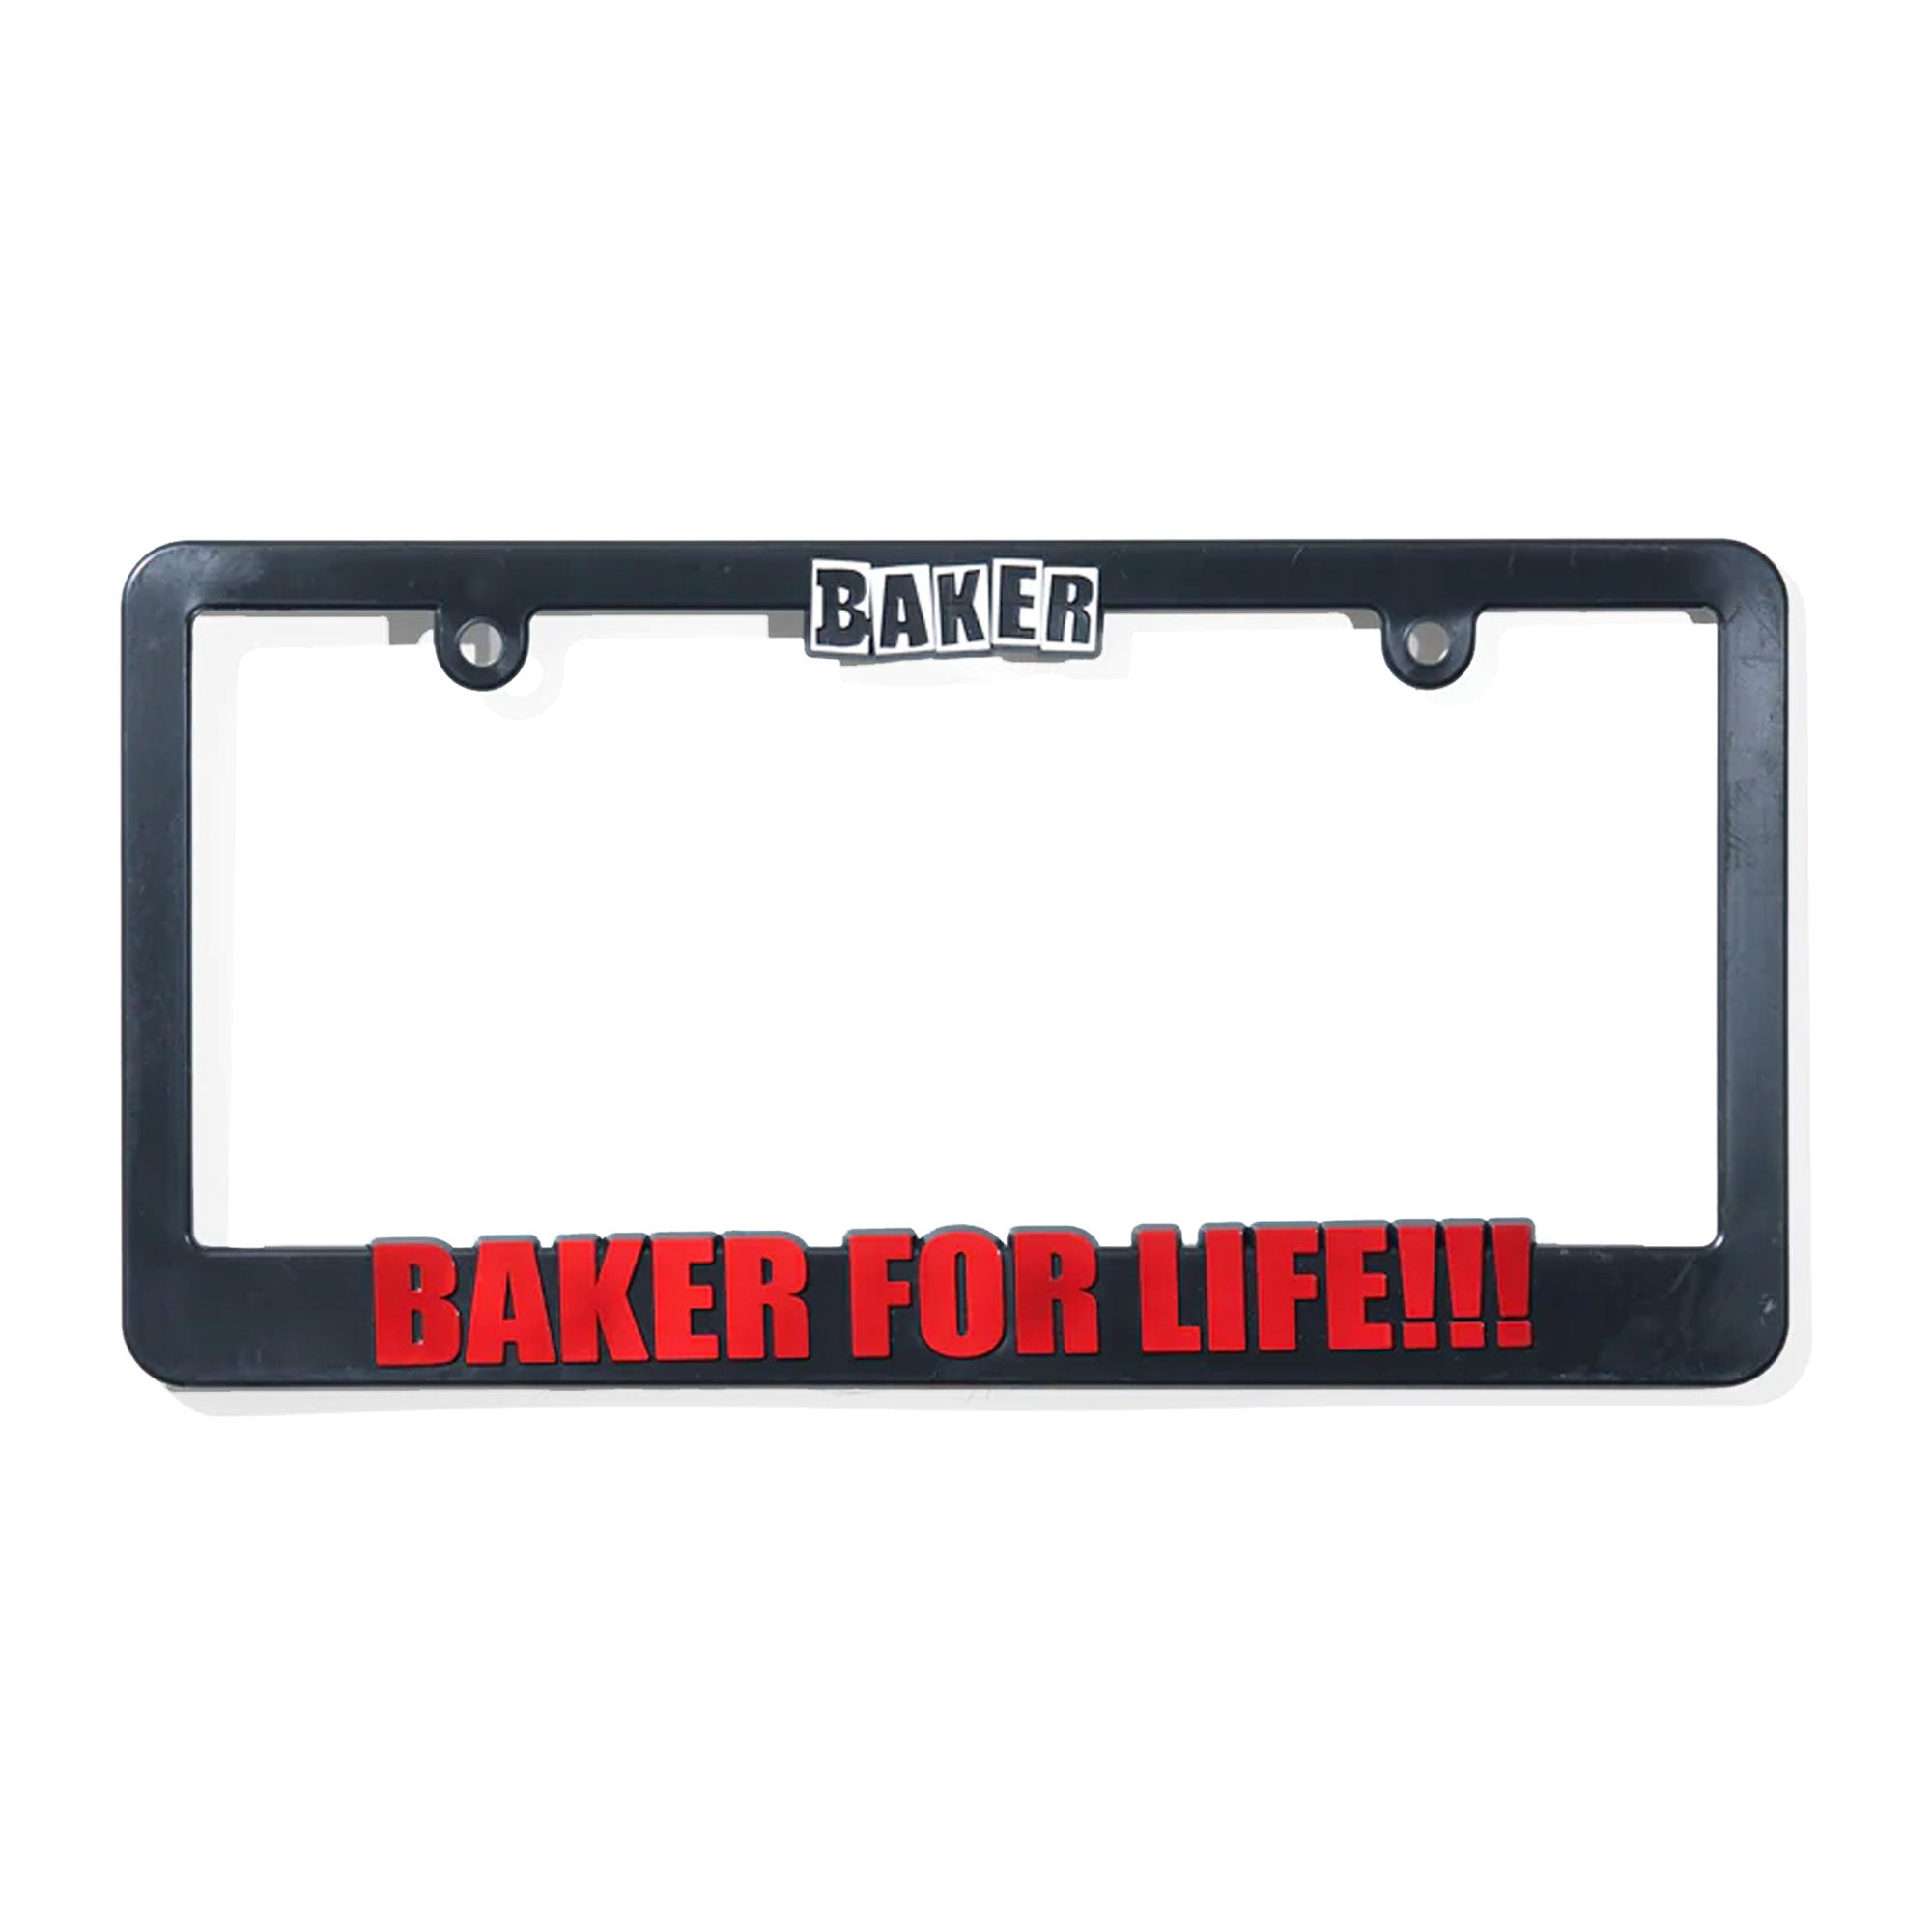 Baker "For Life!!!" License Plate Frame - Apple Valley Emporium